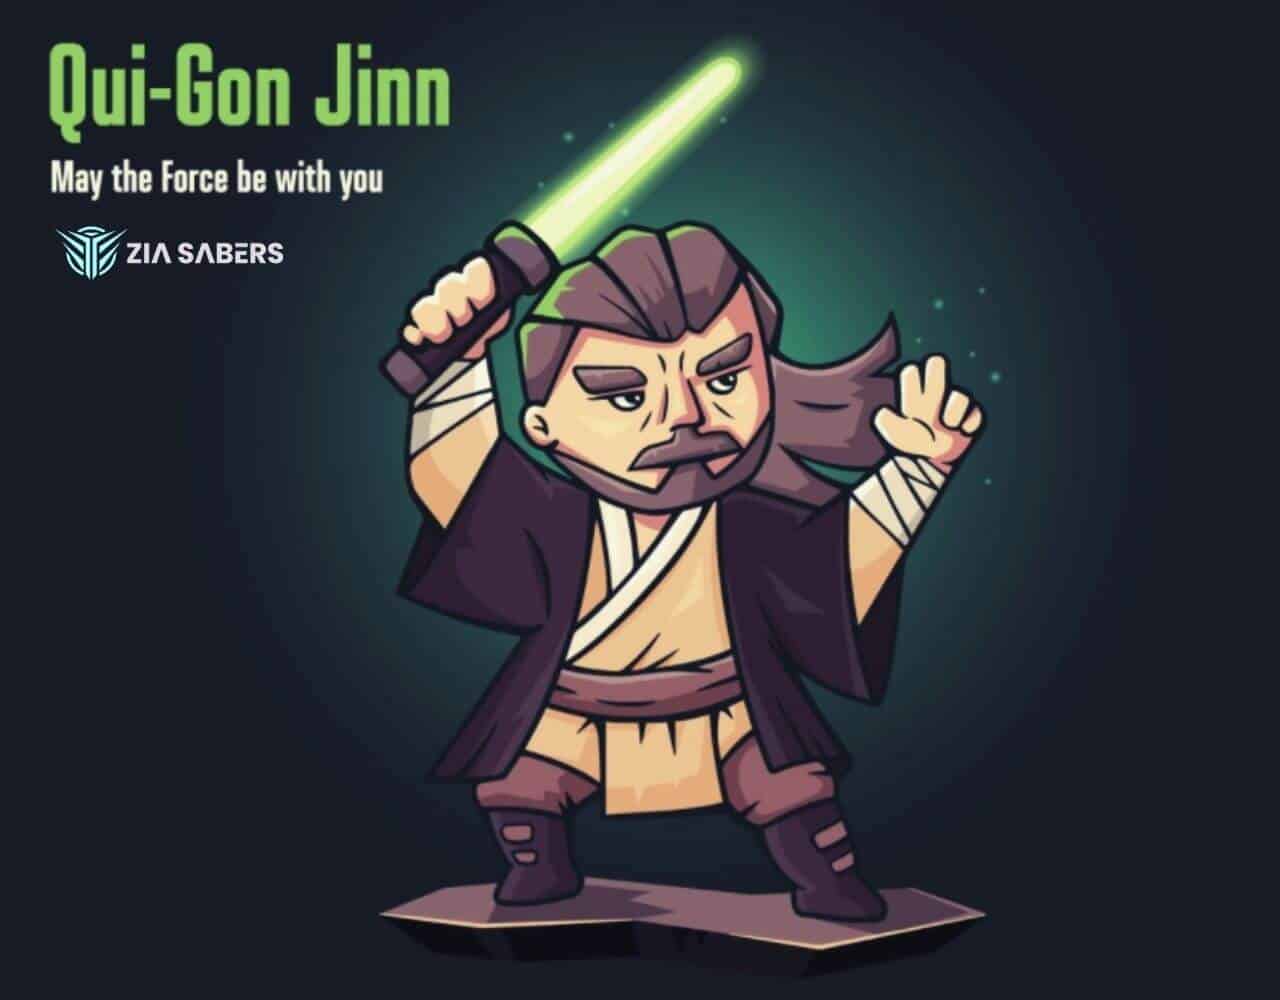 Qui-Gon Jinn Lightsaber